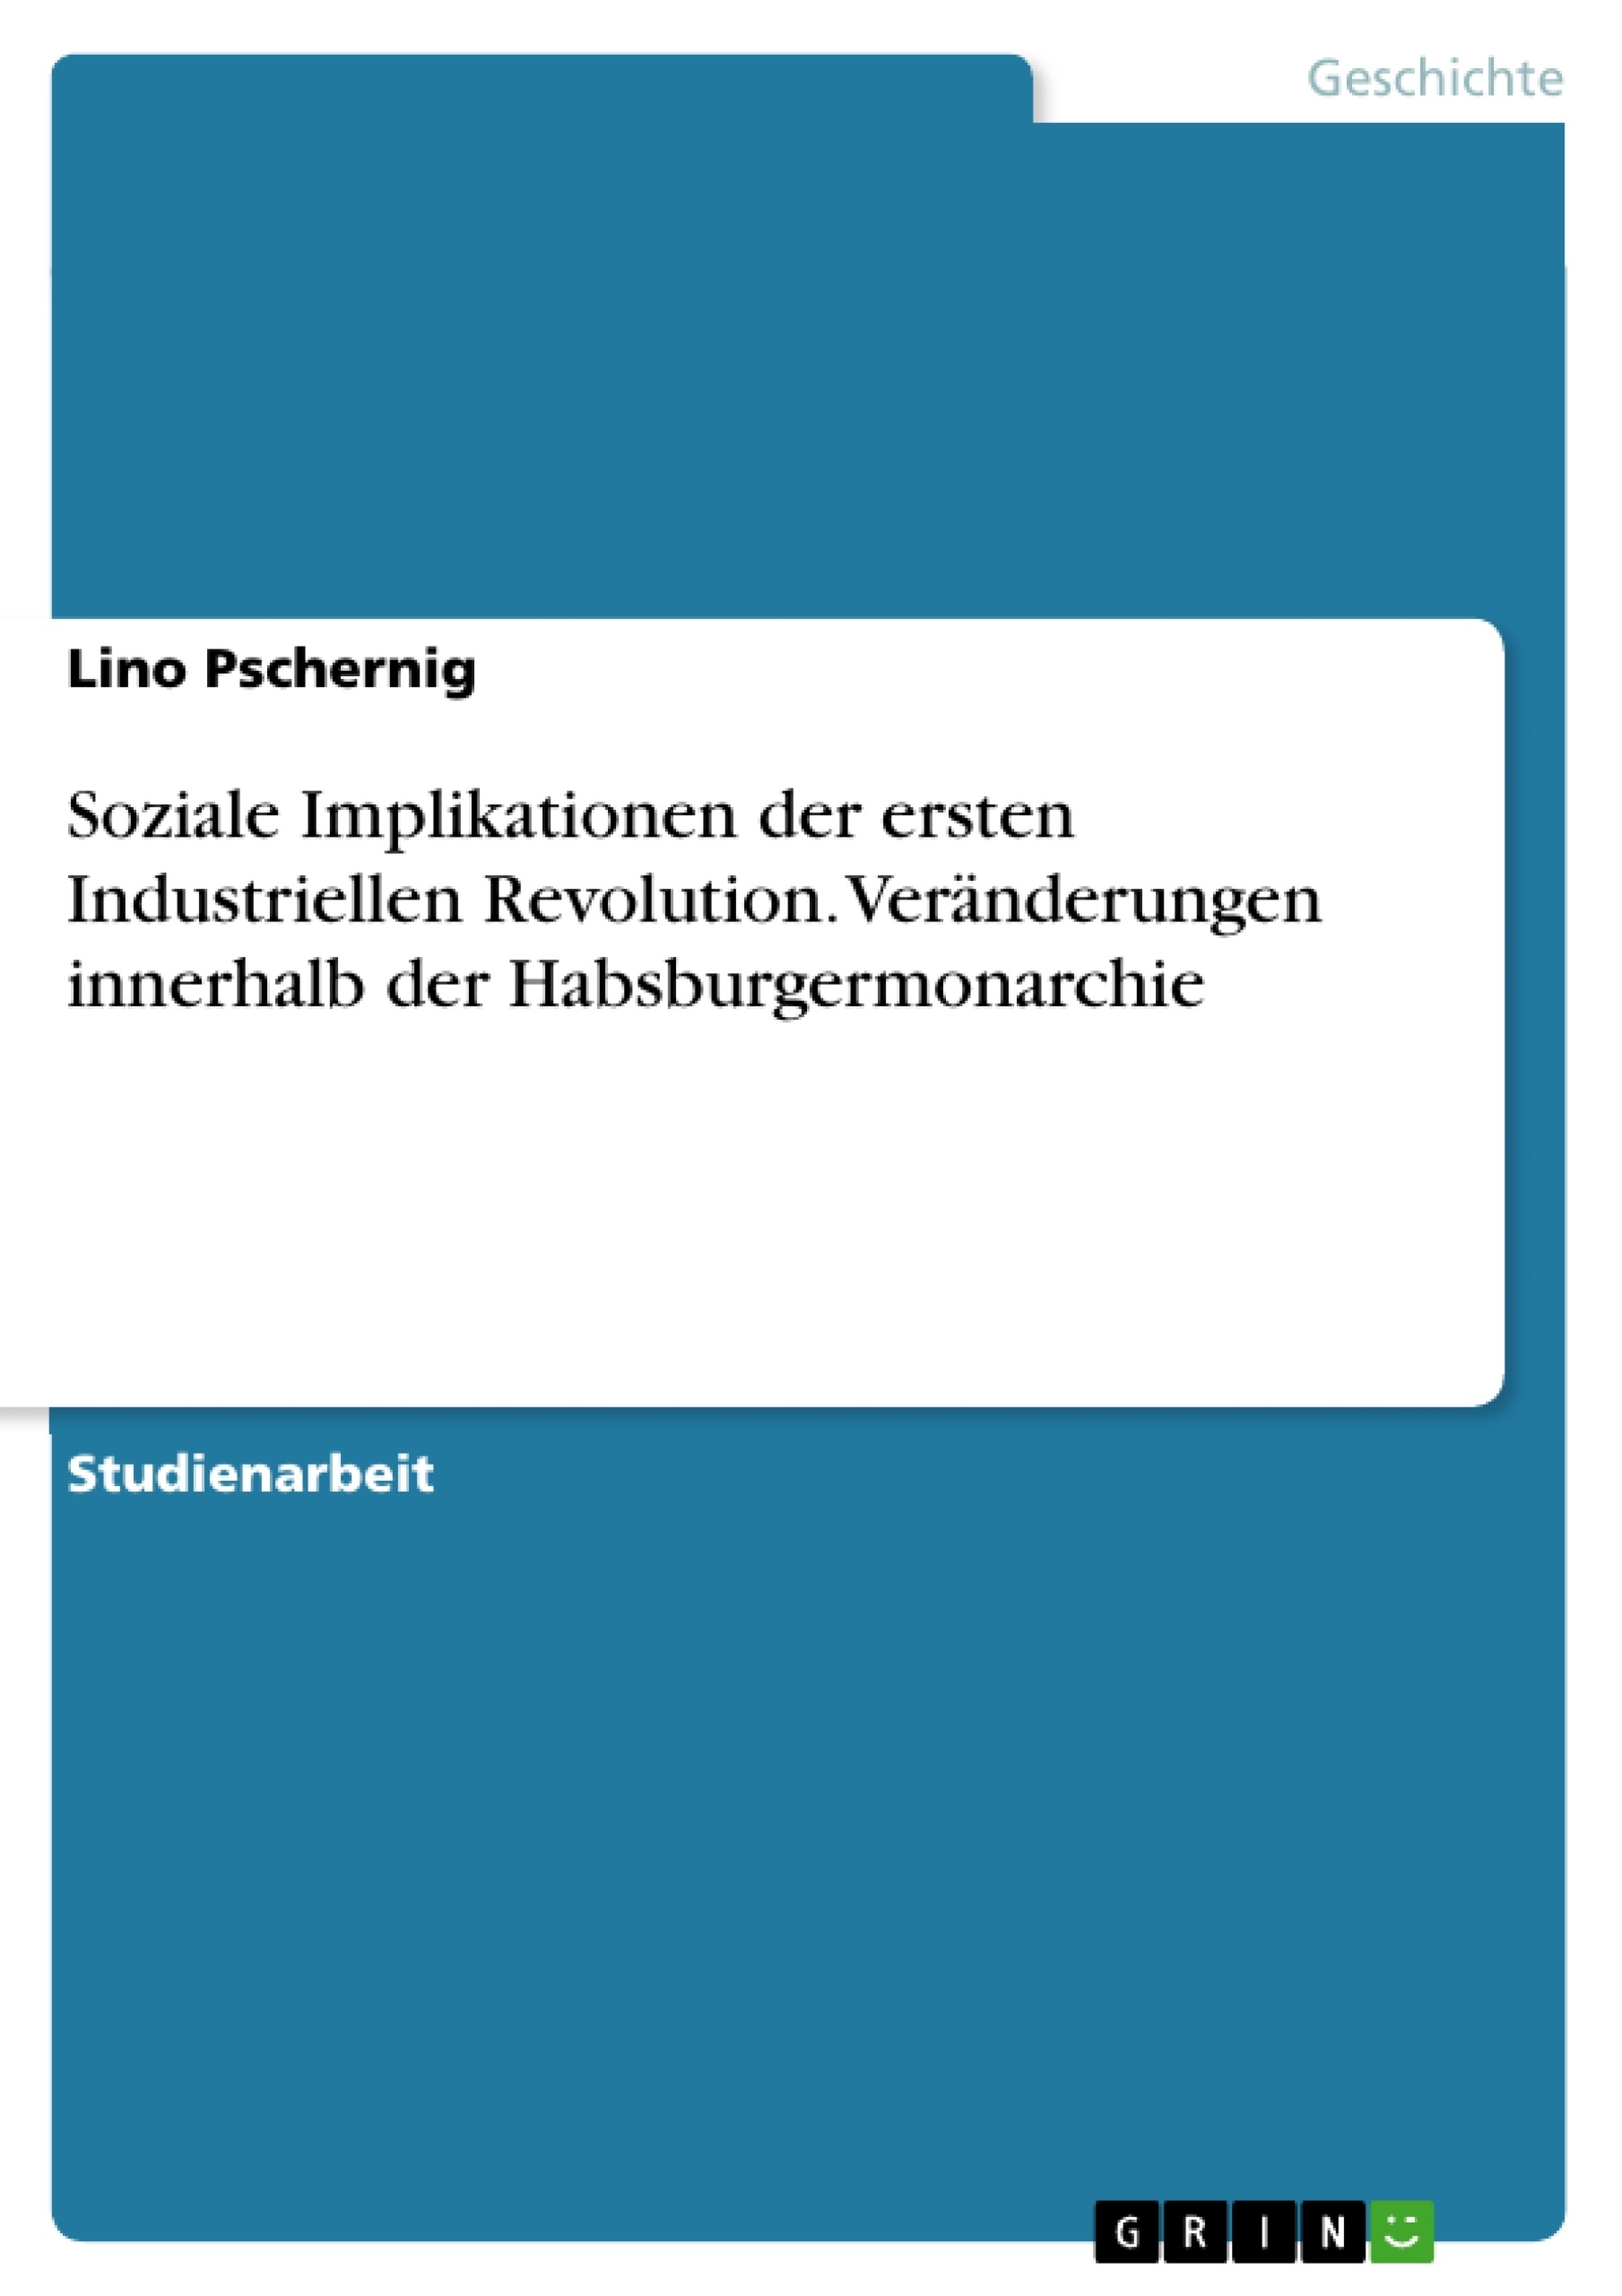 Titel: Soziale Implikationen der ersten Industriellen Revolution. Veränderungen innerhalb der Habsburgermonarchie